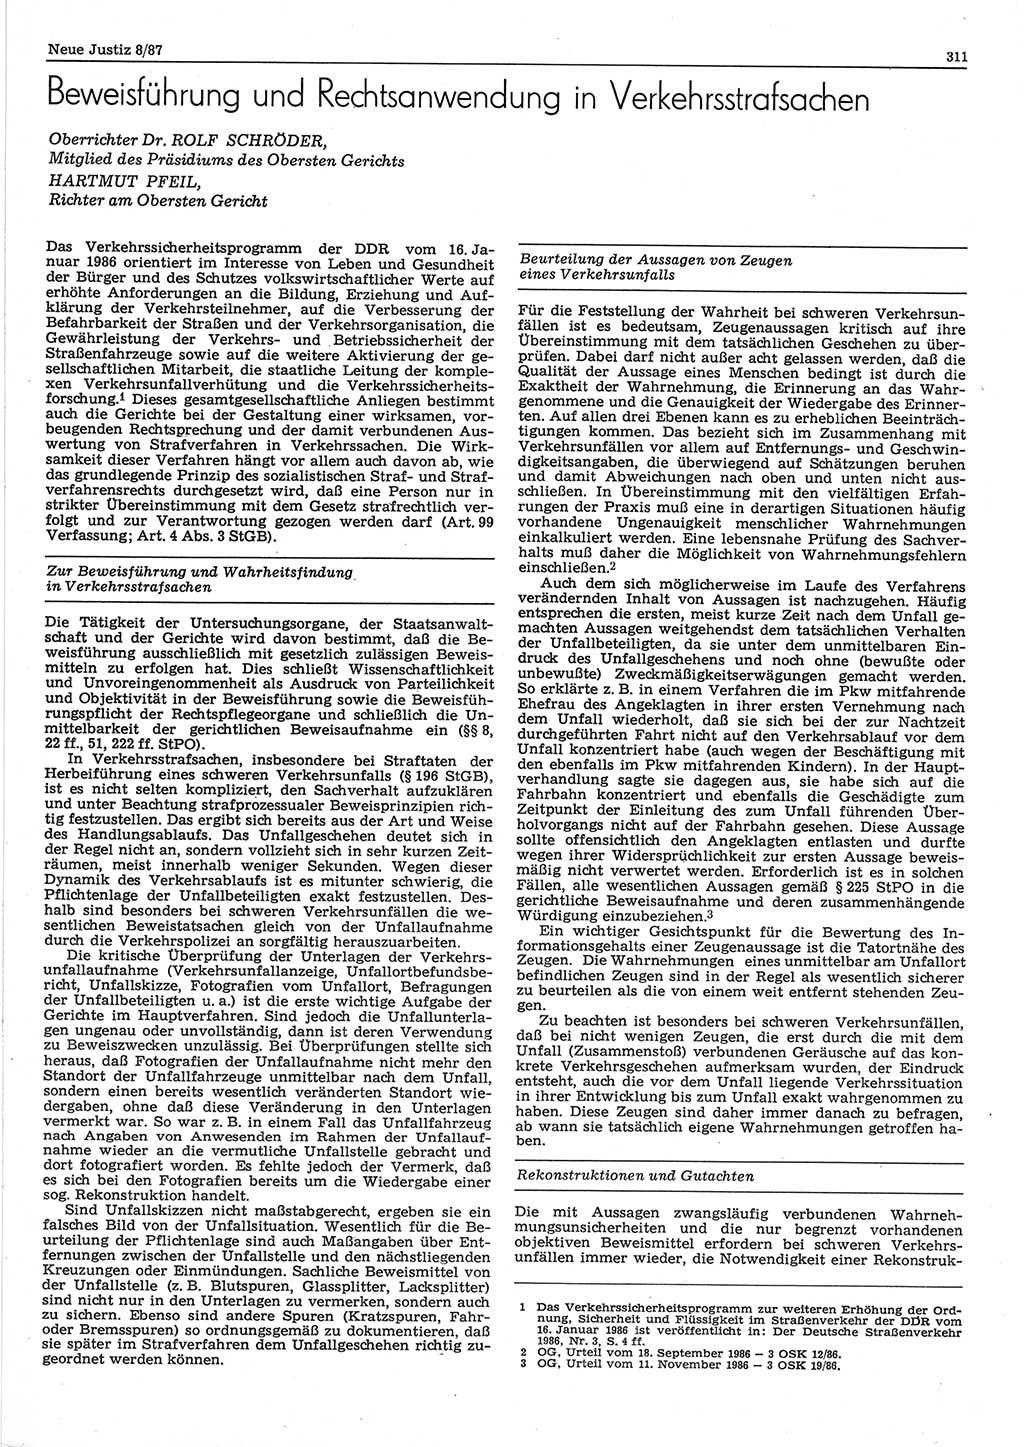 Neue Justiz (NJ), Zeitschrift für sozialistisches Recht und Gesetzlichkeit [Deutsche Demokratische Republik (DDR)], 41. Jahrgang 1987, Seite 311 (NJ DDR 1987, S. 311)